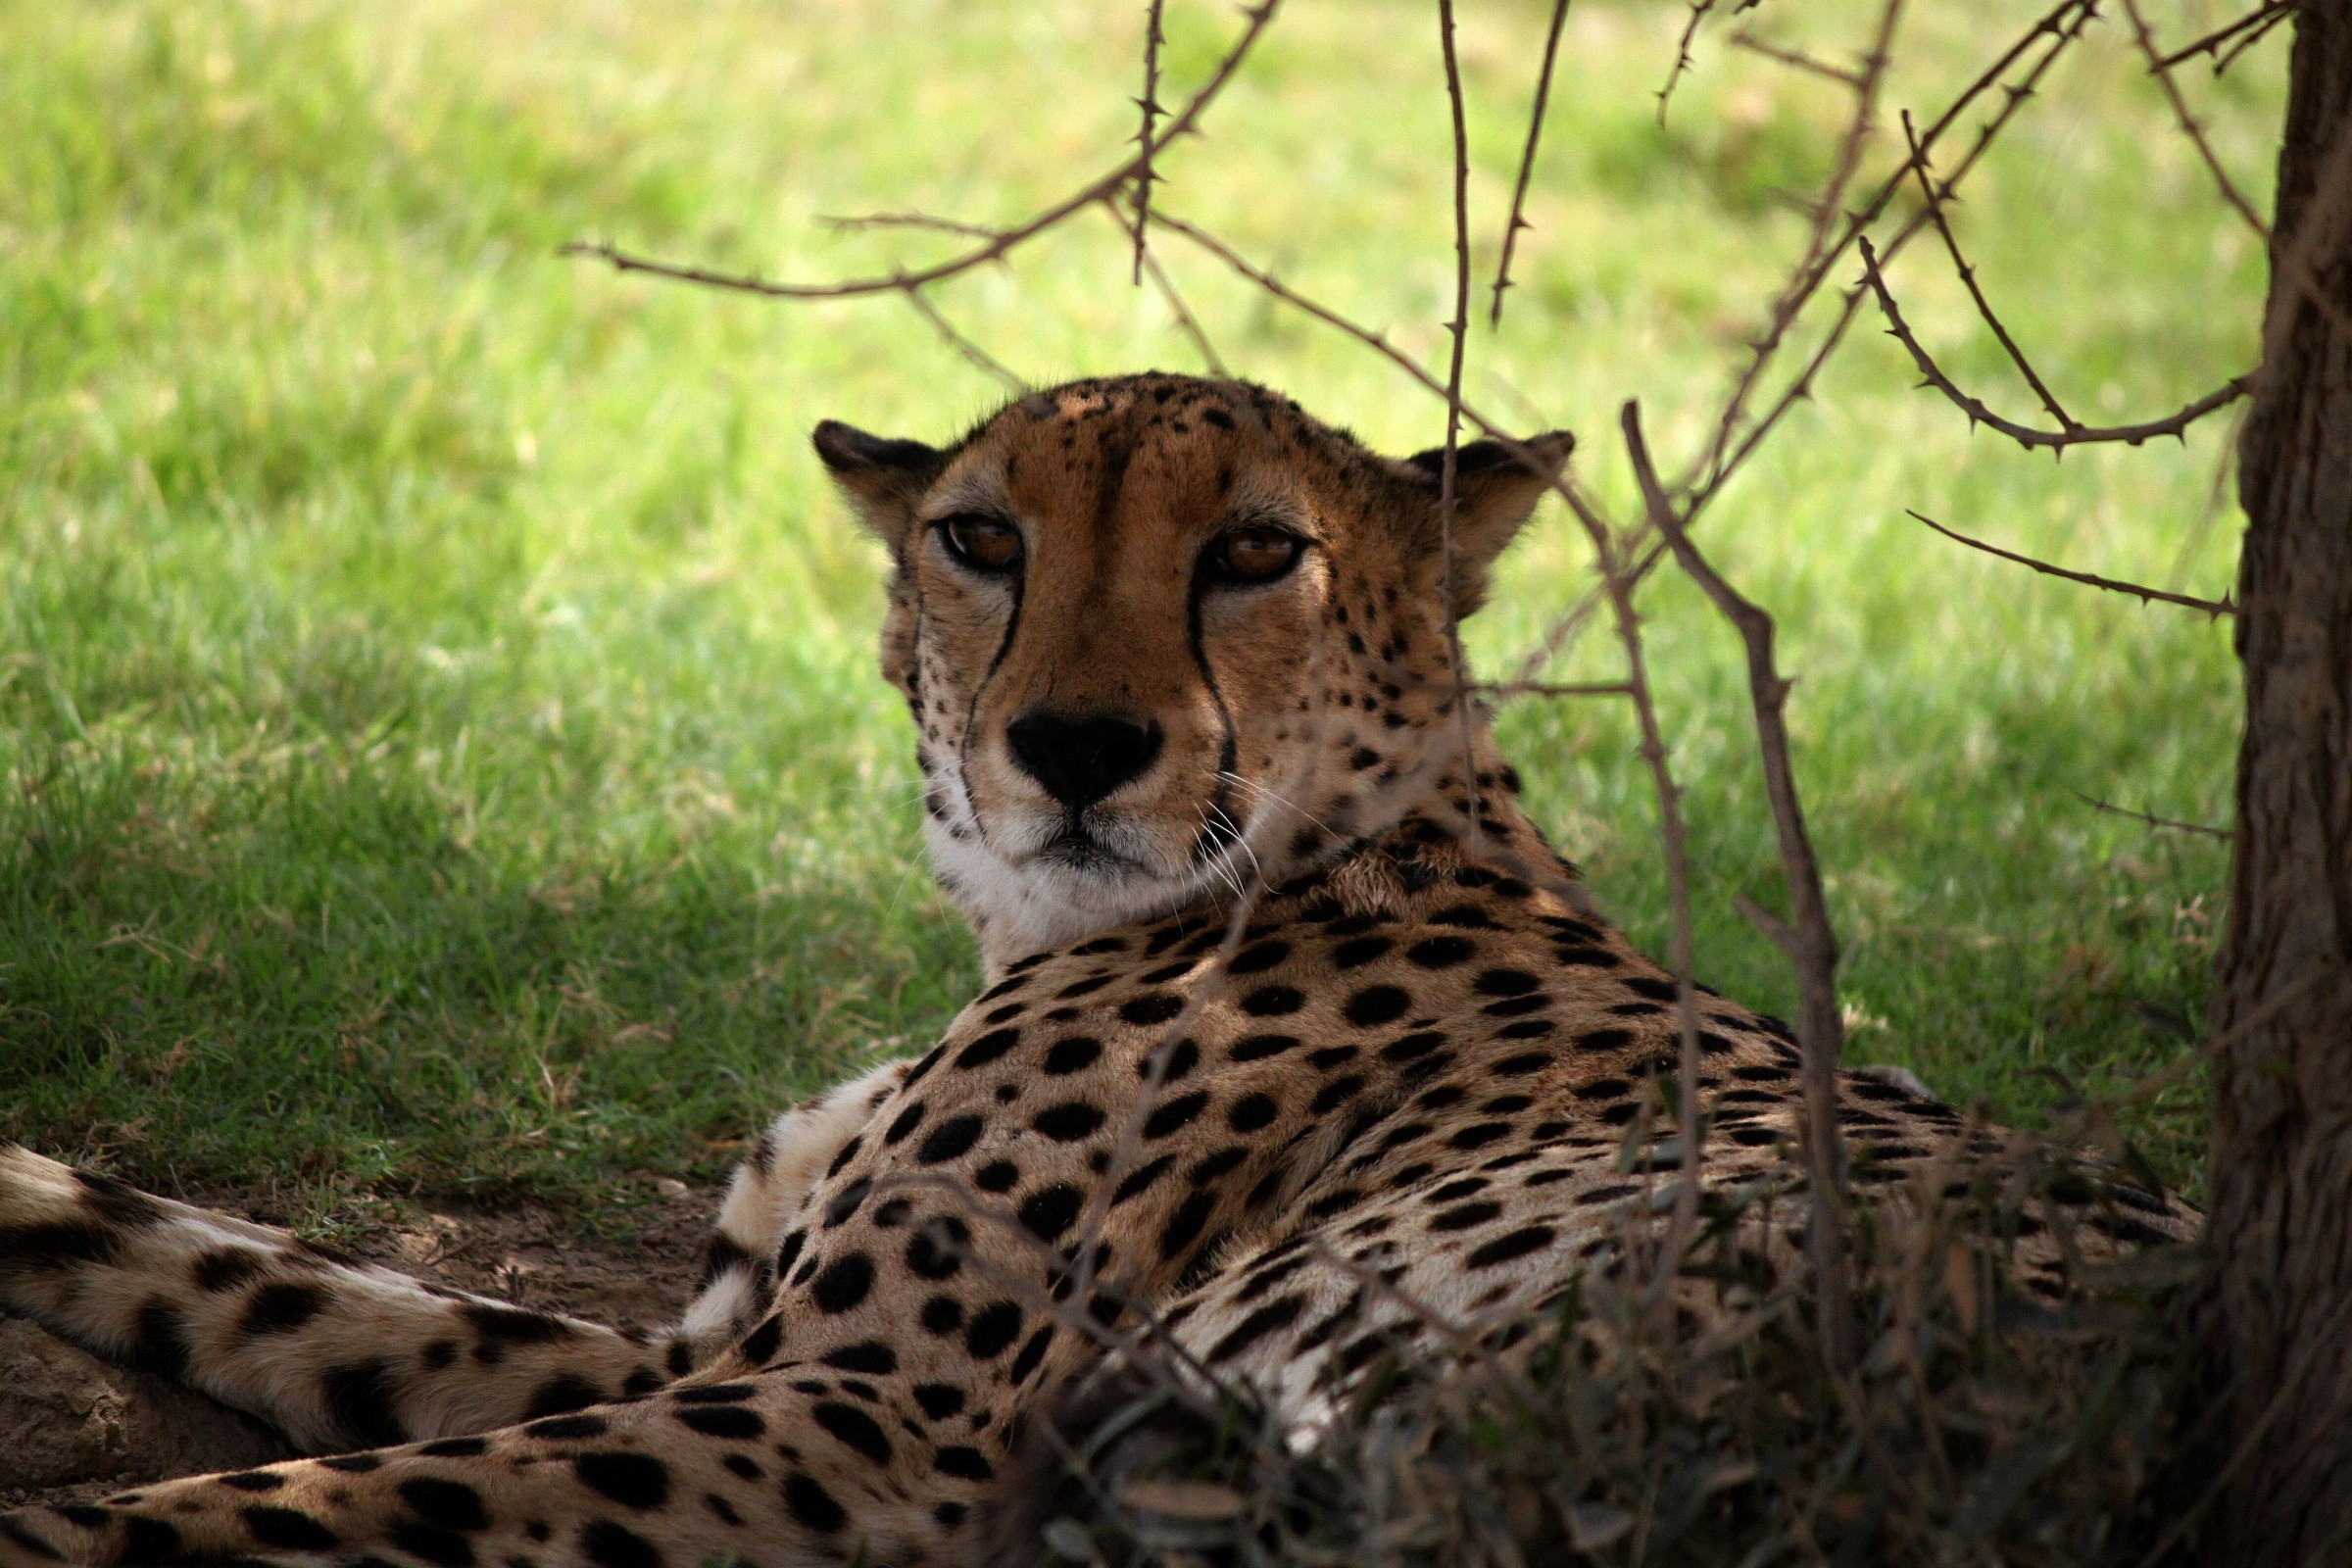 Cheetah "sly"...